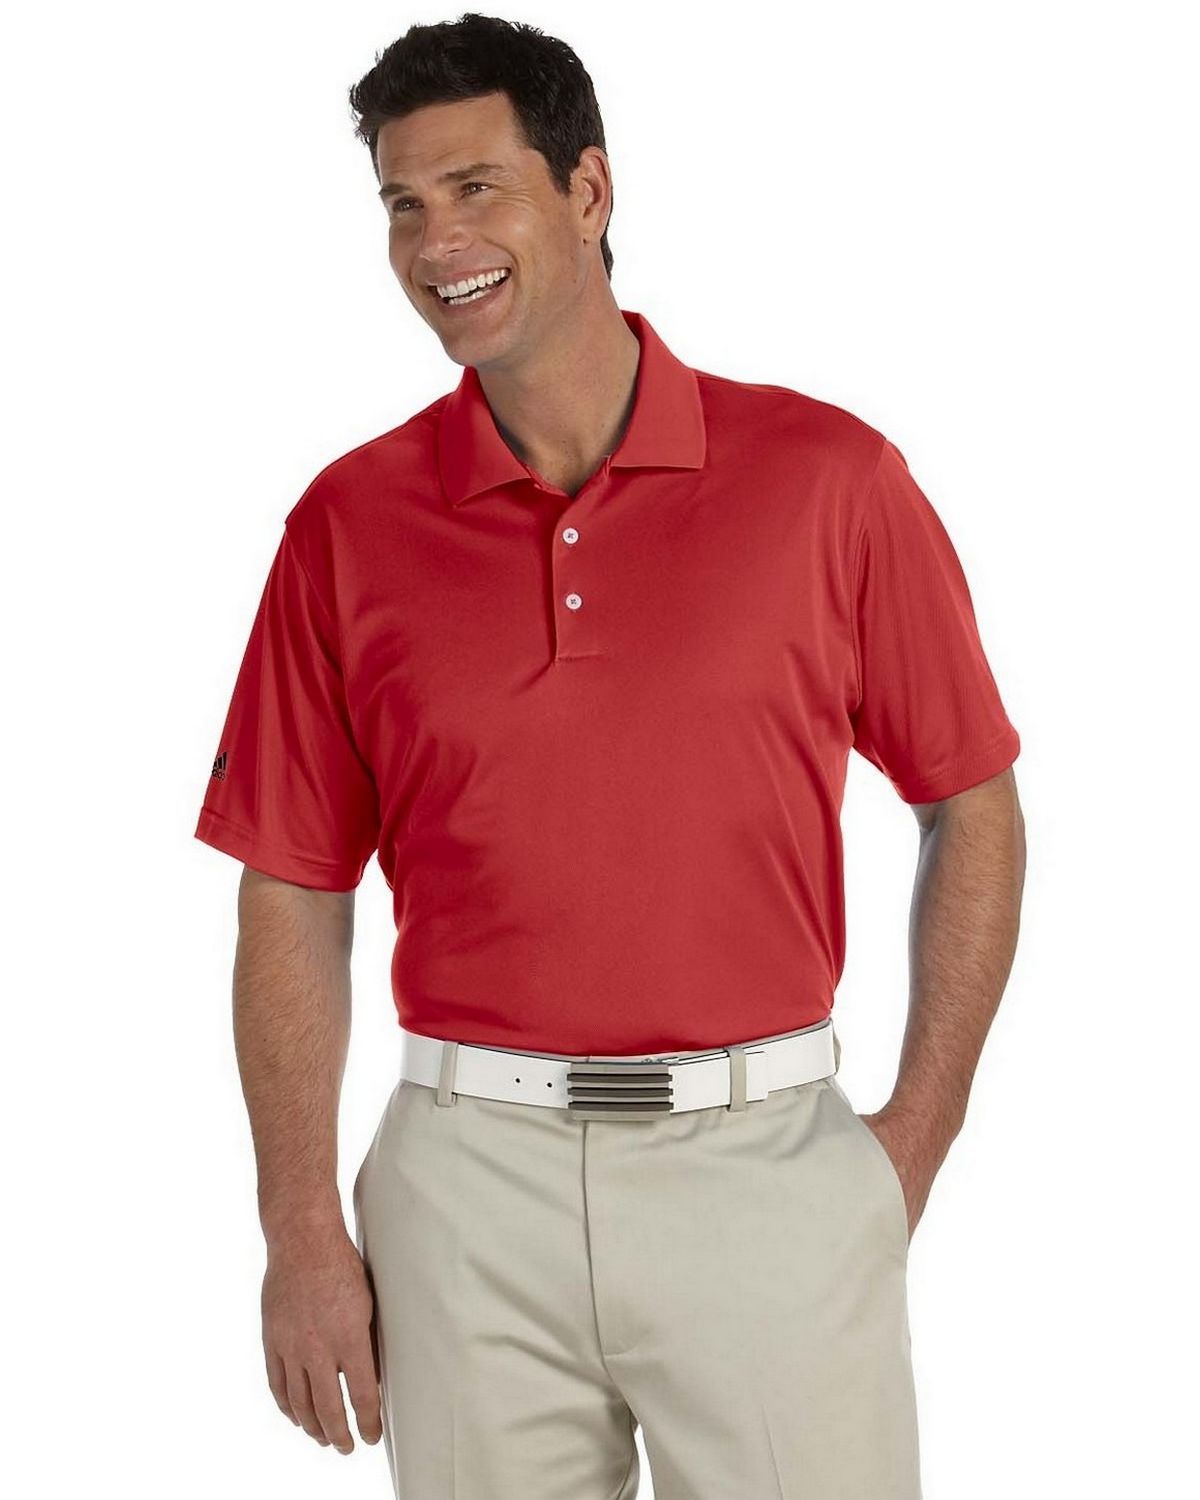 Logo Embroidered Adidas Golf A130 Men's ClimaLite Pique Short-Sleeve Polo